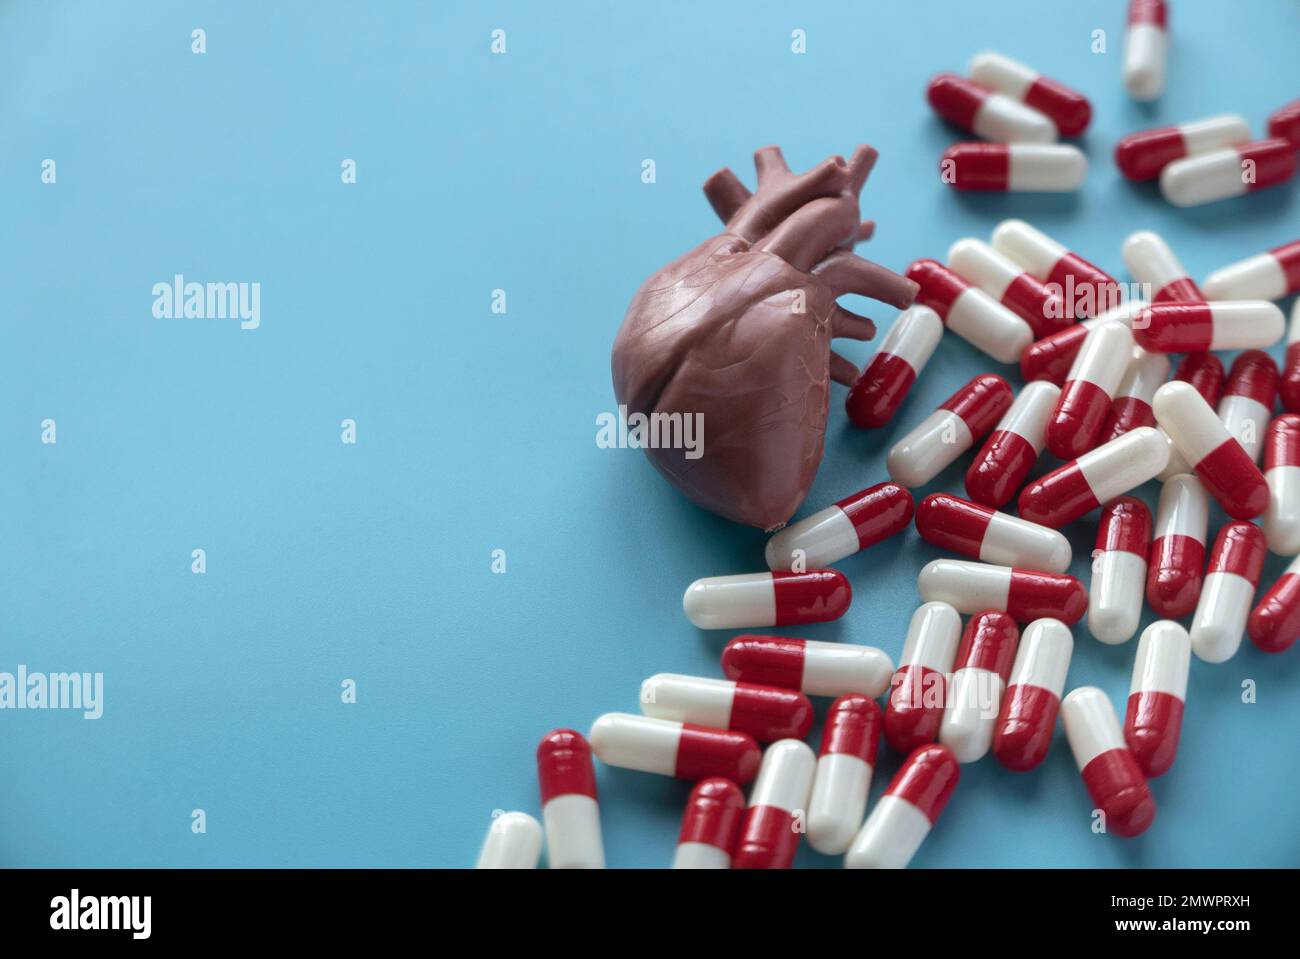 Concept de traitement des maladies cardiaques avec des médicaments. Modèle d'organe de coeur humain avec des pilules. Banque D'Images